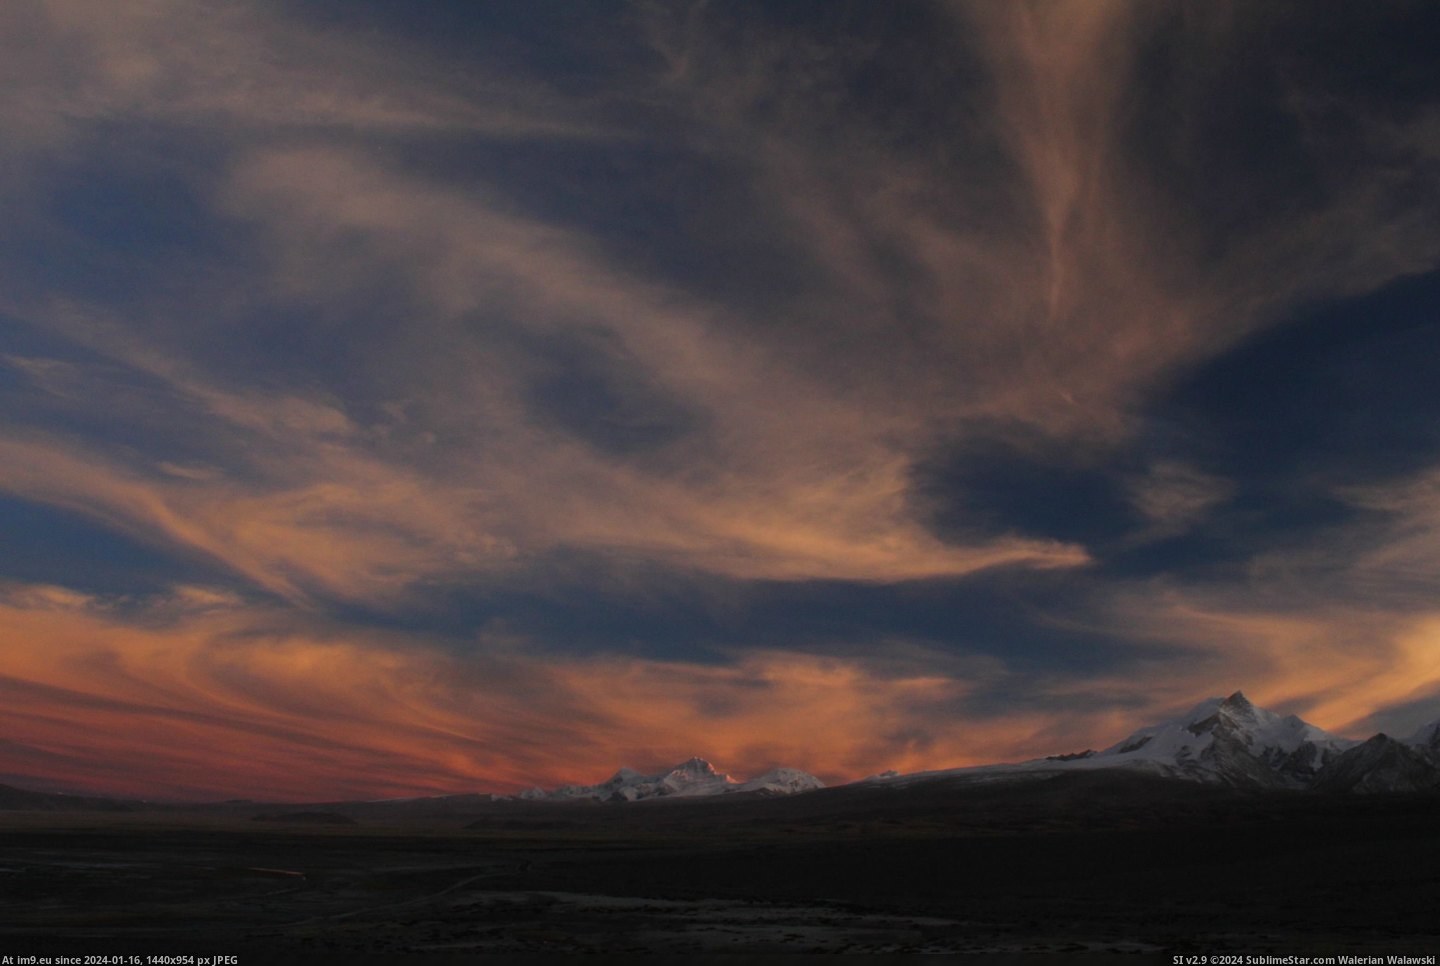 #Sunset #Clouds #3456x2304 #Himalayas #Tibet #Shaped #Phoenix [Earthporn] Sunset and phoenix shaped clouds over the Himalayas, Tibet[3456x2304] Pic. (Bild von album My r/EARTHPORN favs))